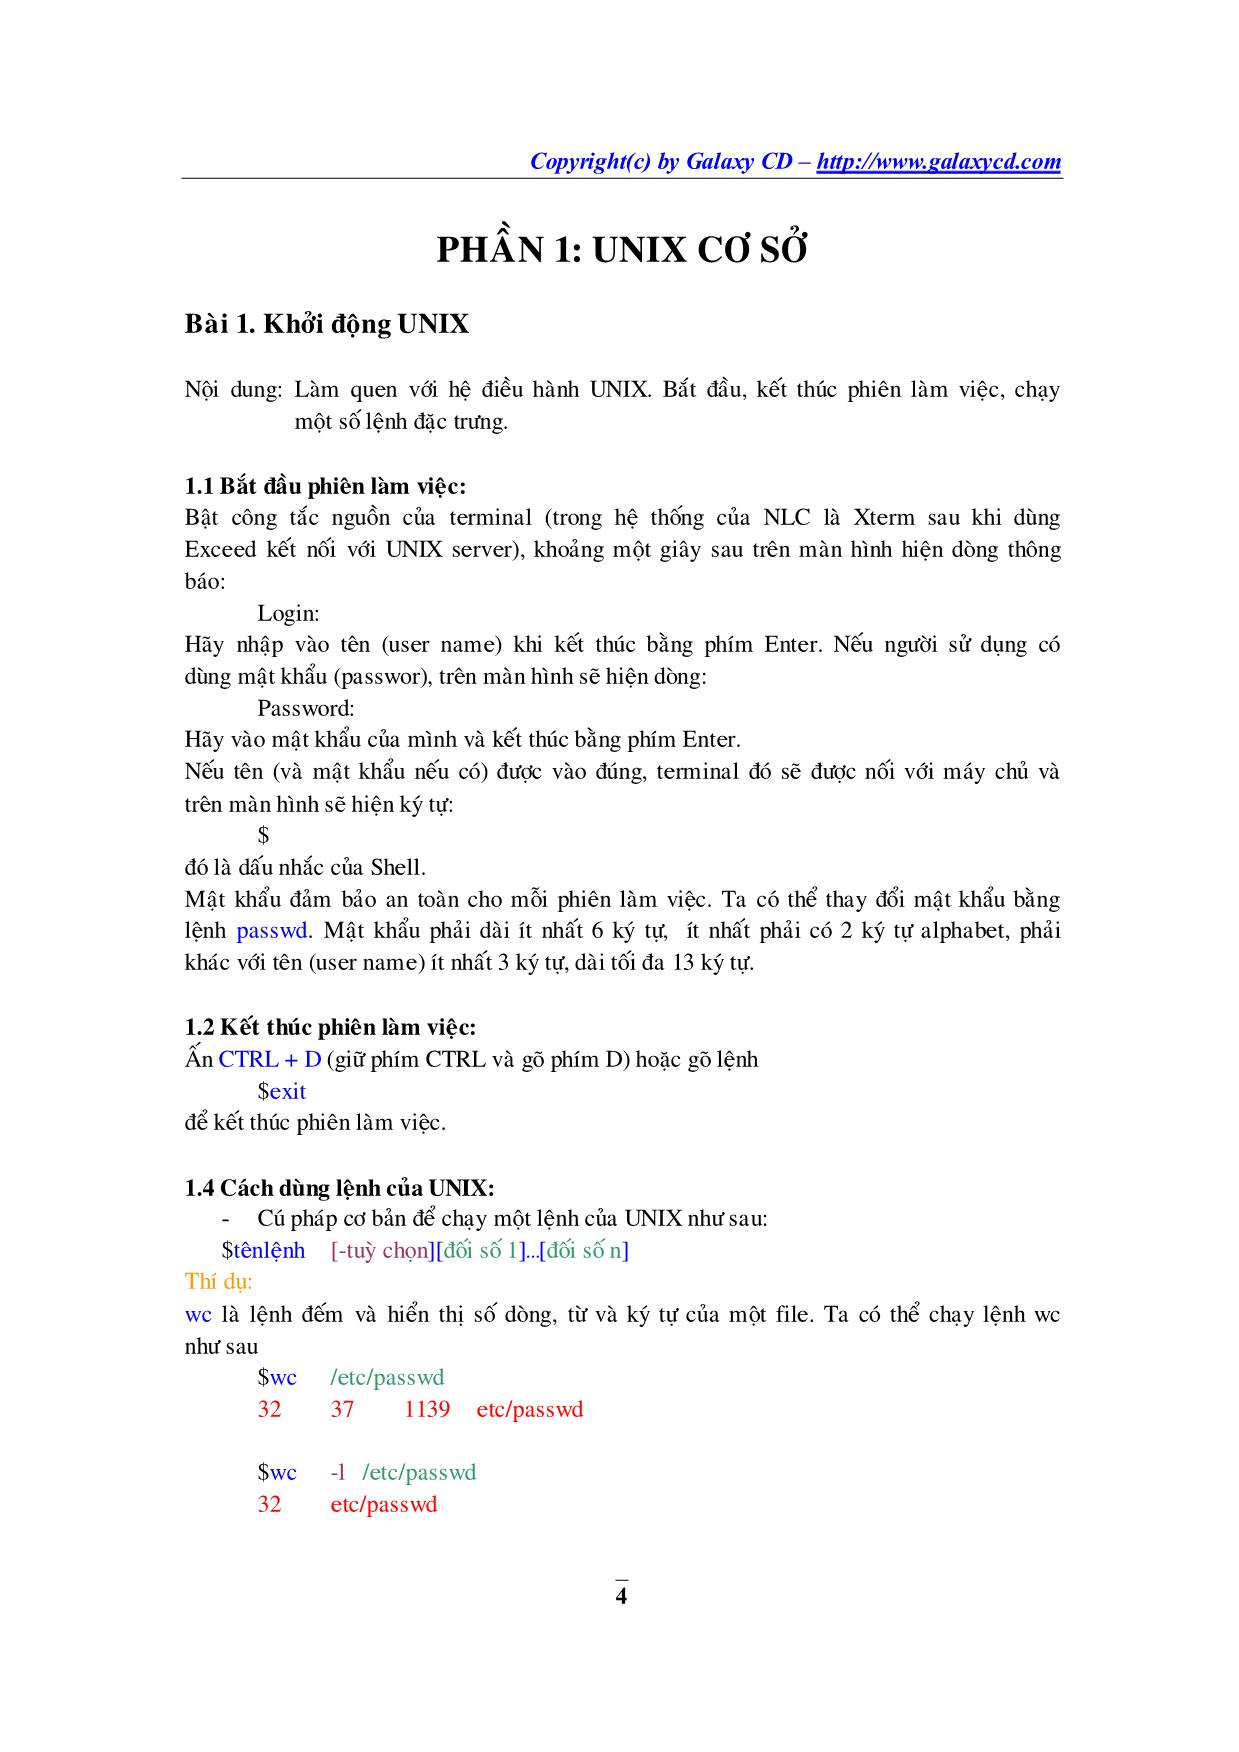 Hệ điều hành Unix trang 5